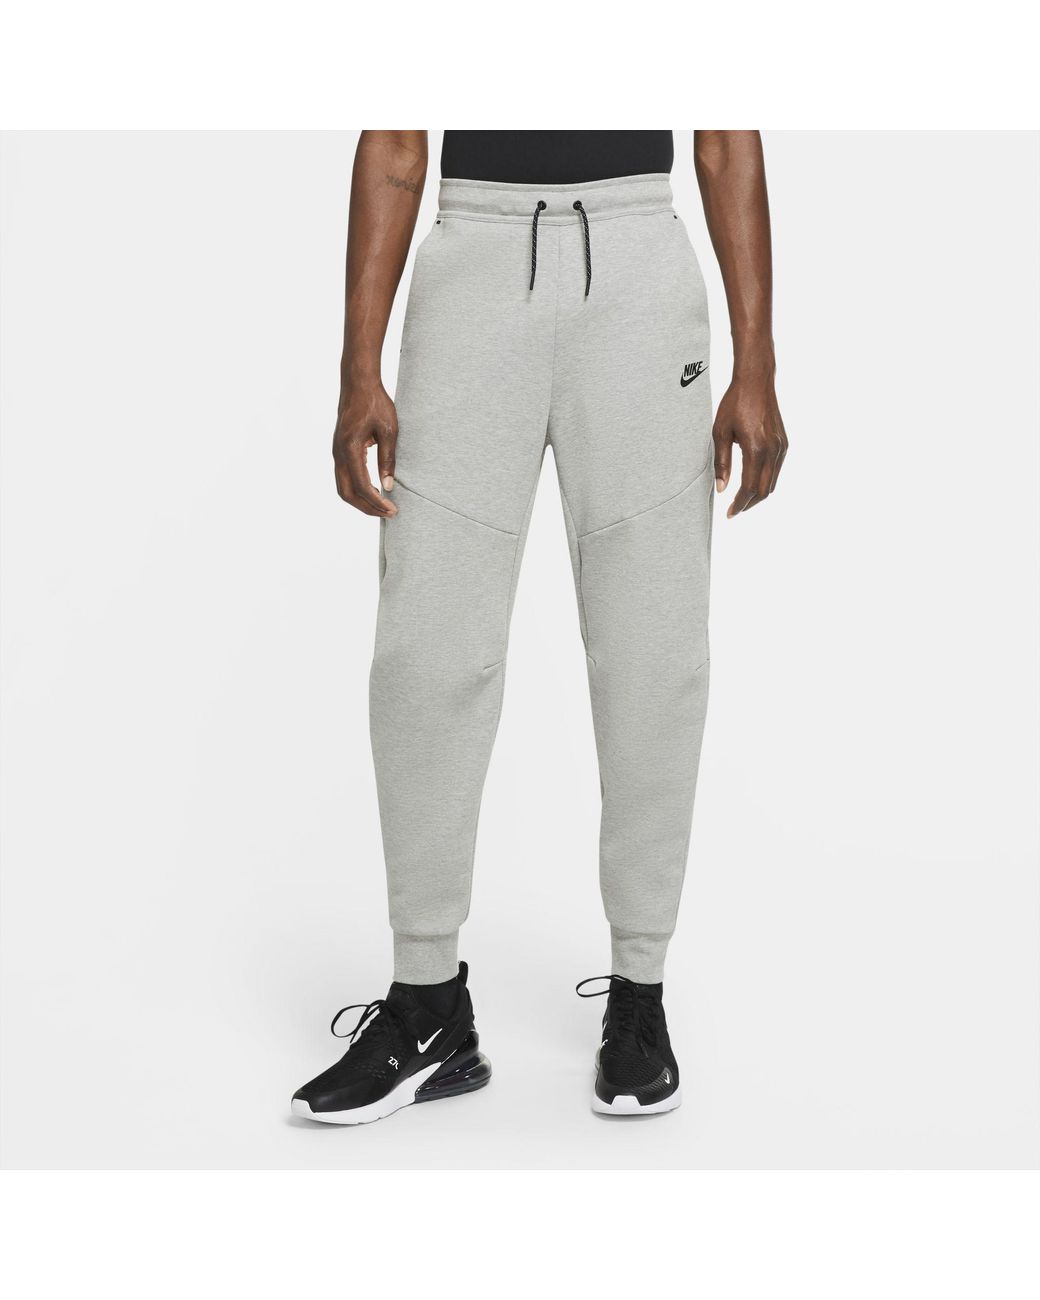 Nike Sportswear Tech Fleece Joggers in Grey (Grey) for Men - Save 46% |  Lyst Australia